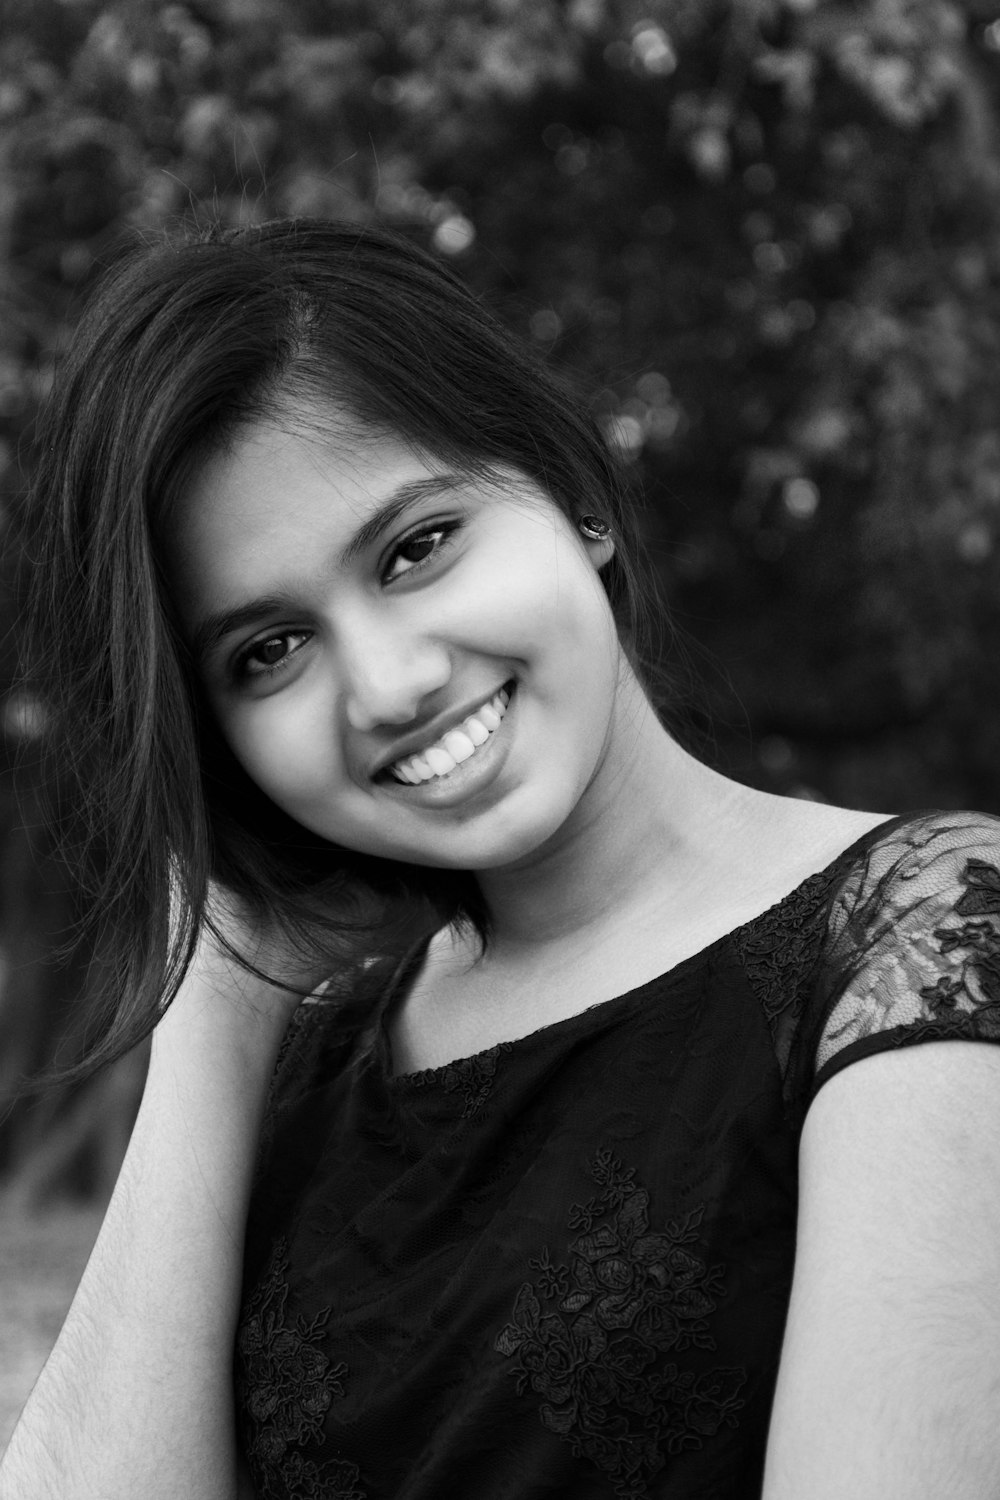 Una foto en blanco y negro de una mujer sonriendo